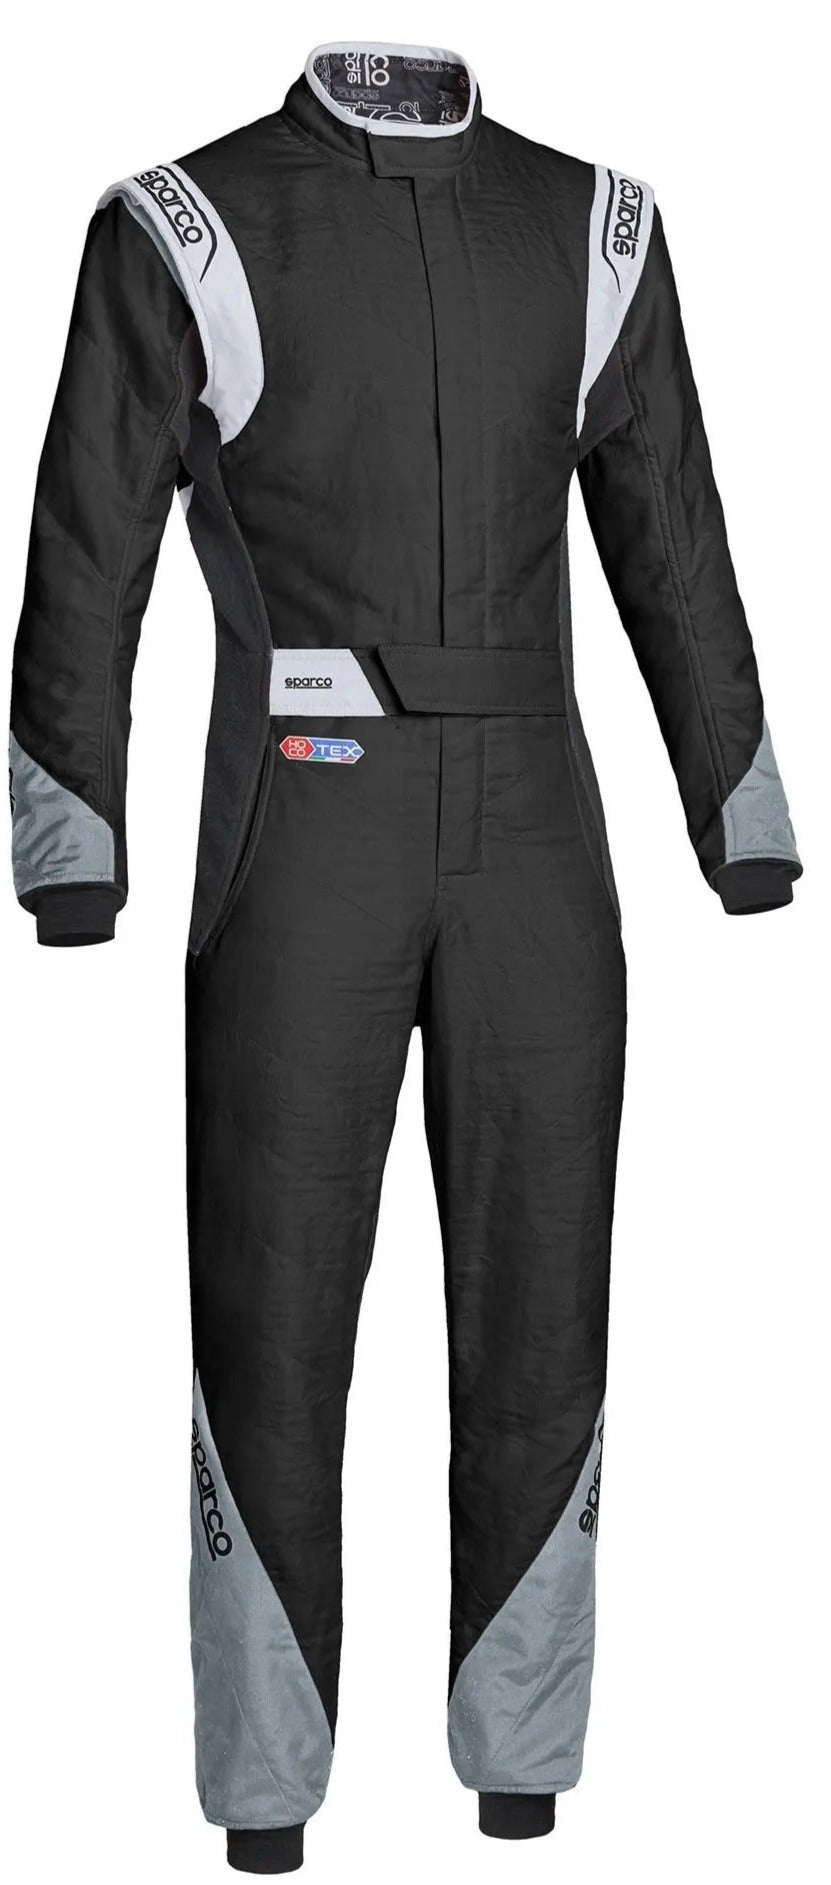 Sparco Eagle RS8.2 Auto Race Fire Suit FIA 8856-2000 Black / Grey Image